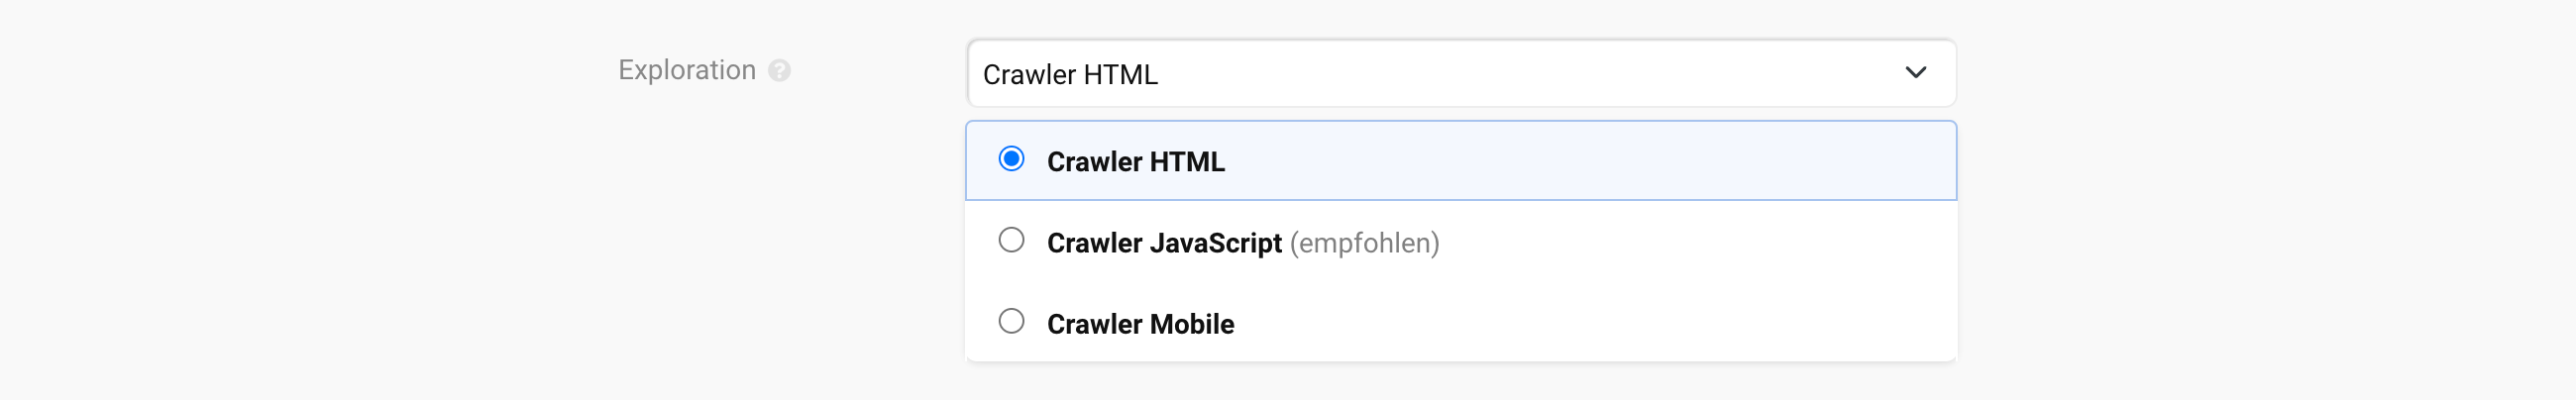 Choisir le type d'exploration HTMP, JavaScript ou Mobile